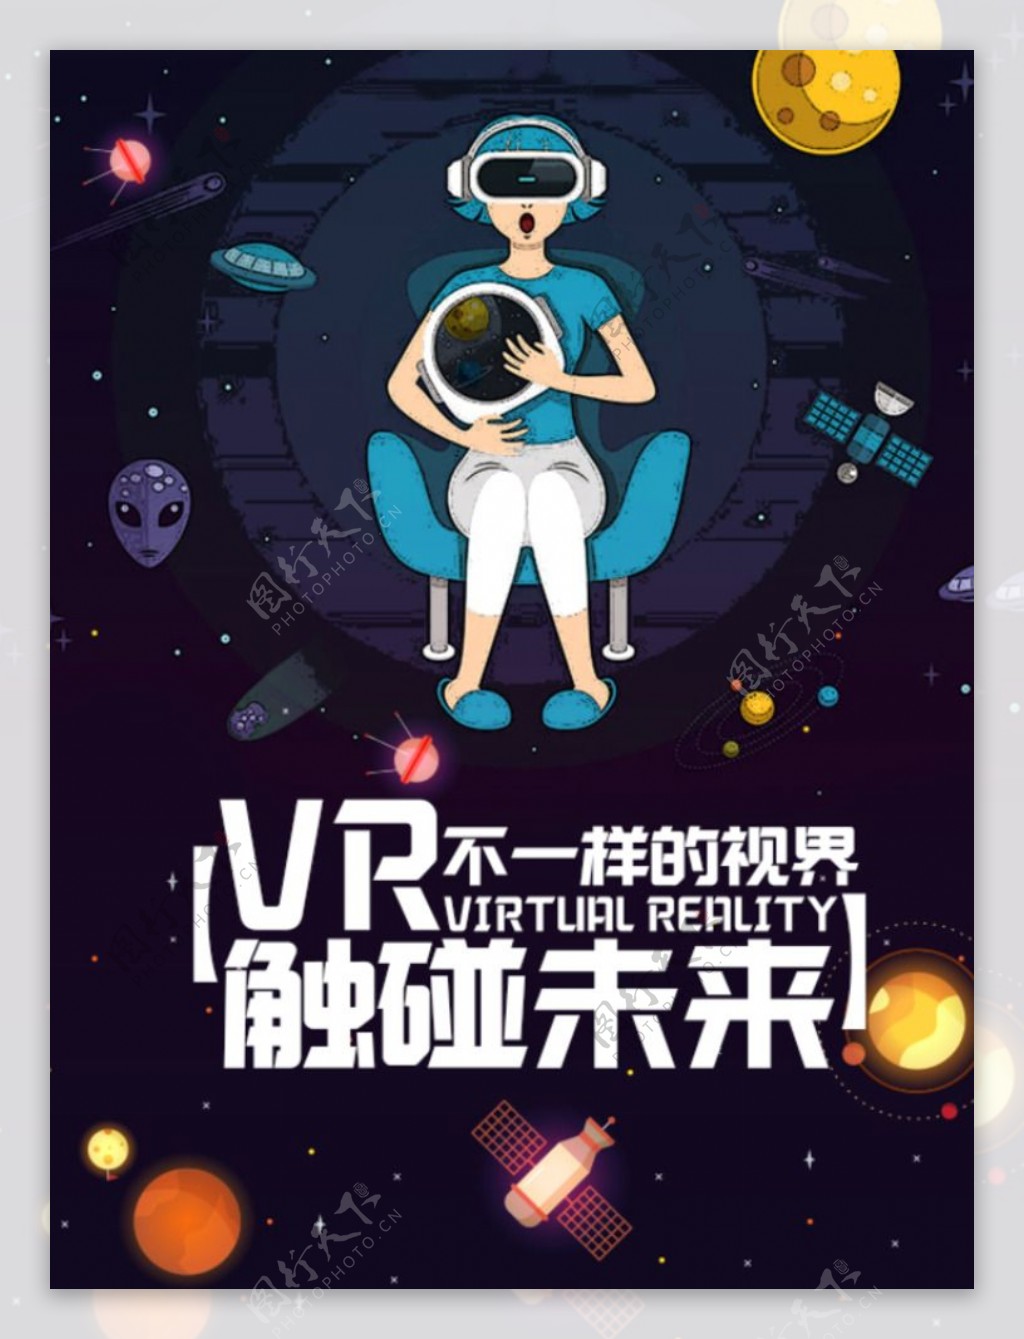 VR广告